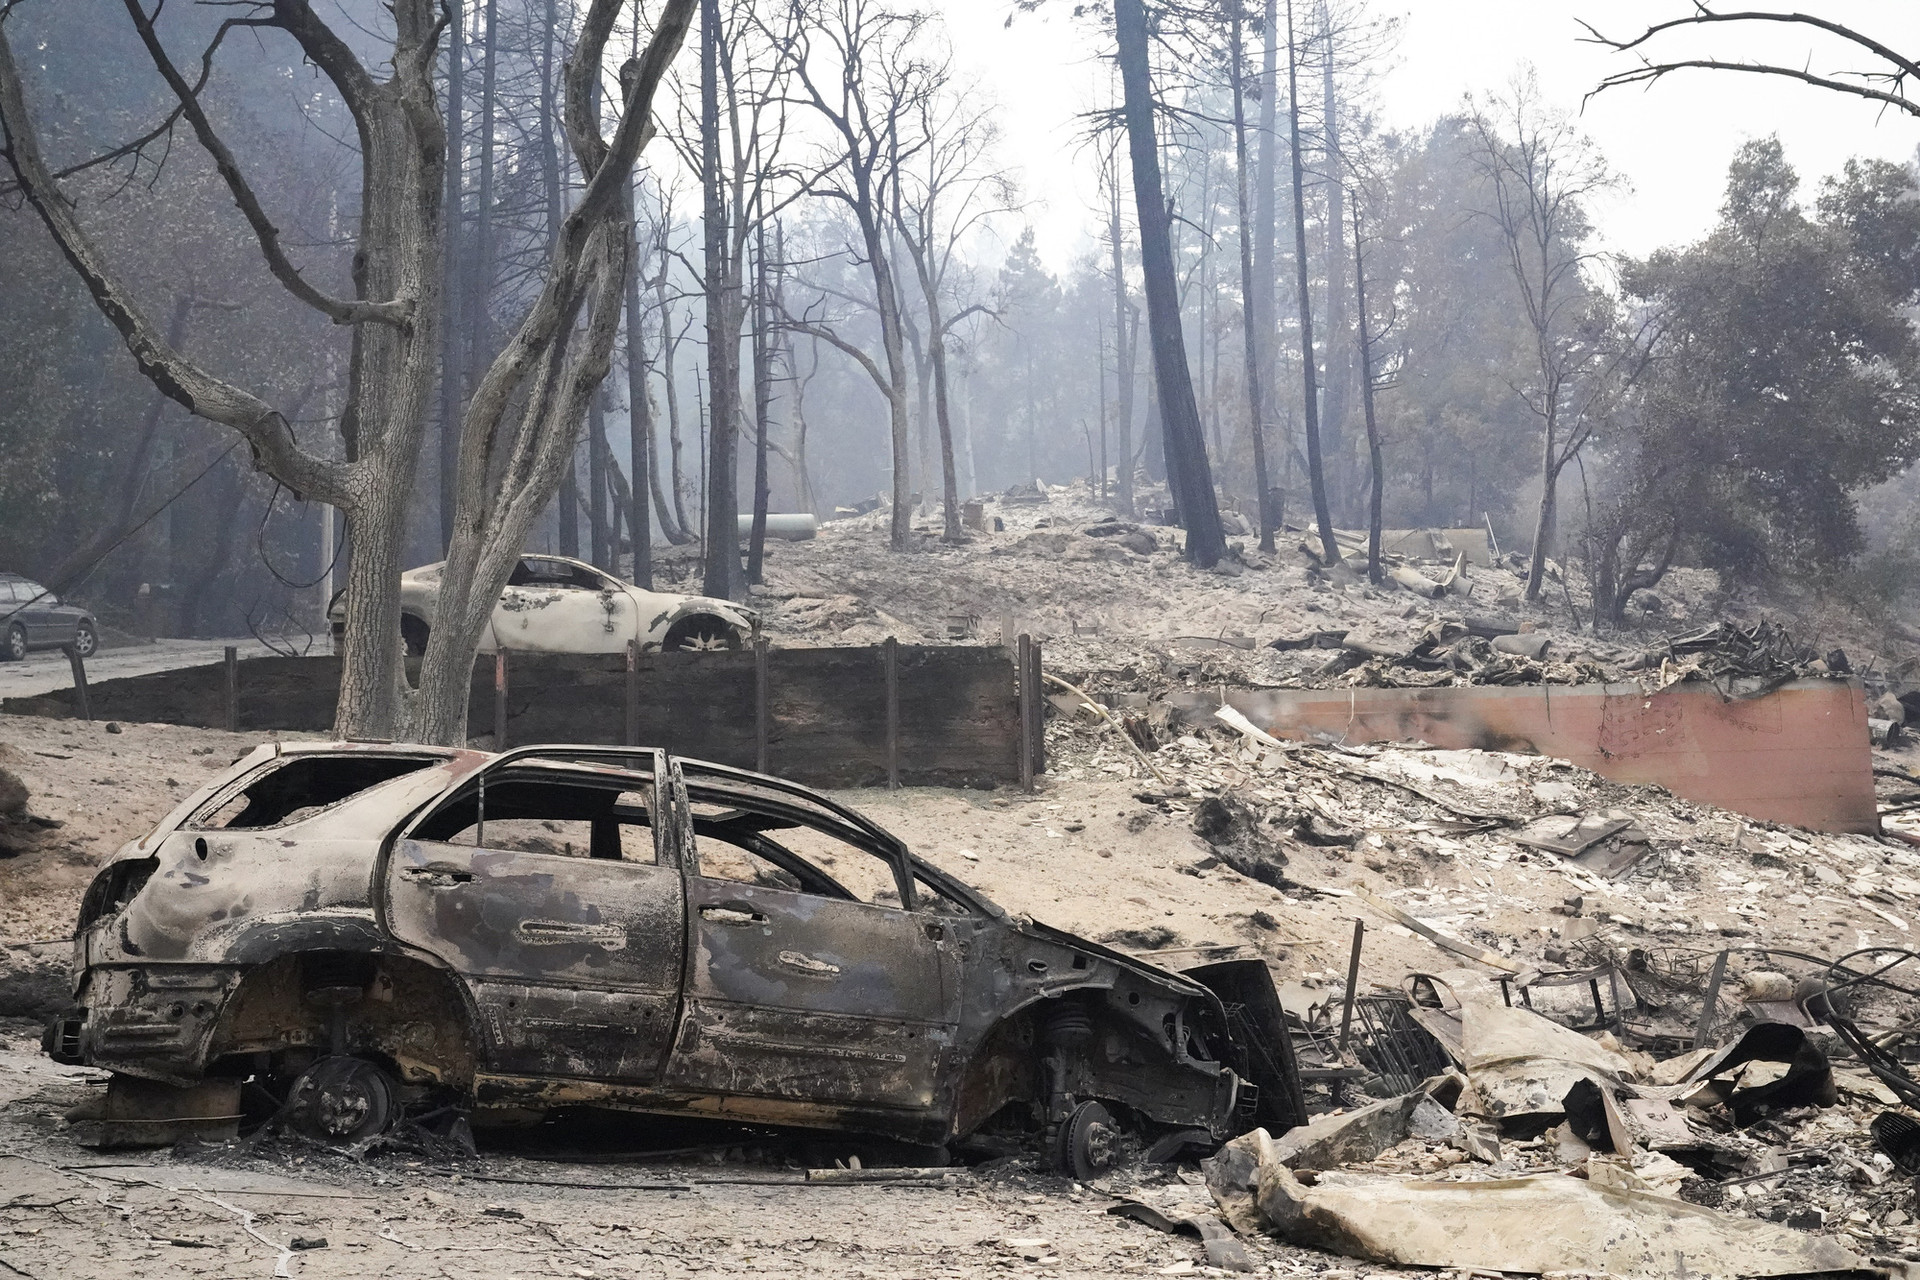 Hàng chục vụ cháy lớn tại California, Tổng thống Trump tuyên bố tình trạng thảm họa - Ảnh 2.